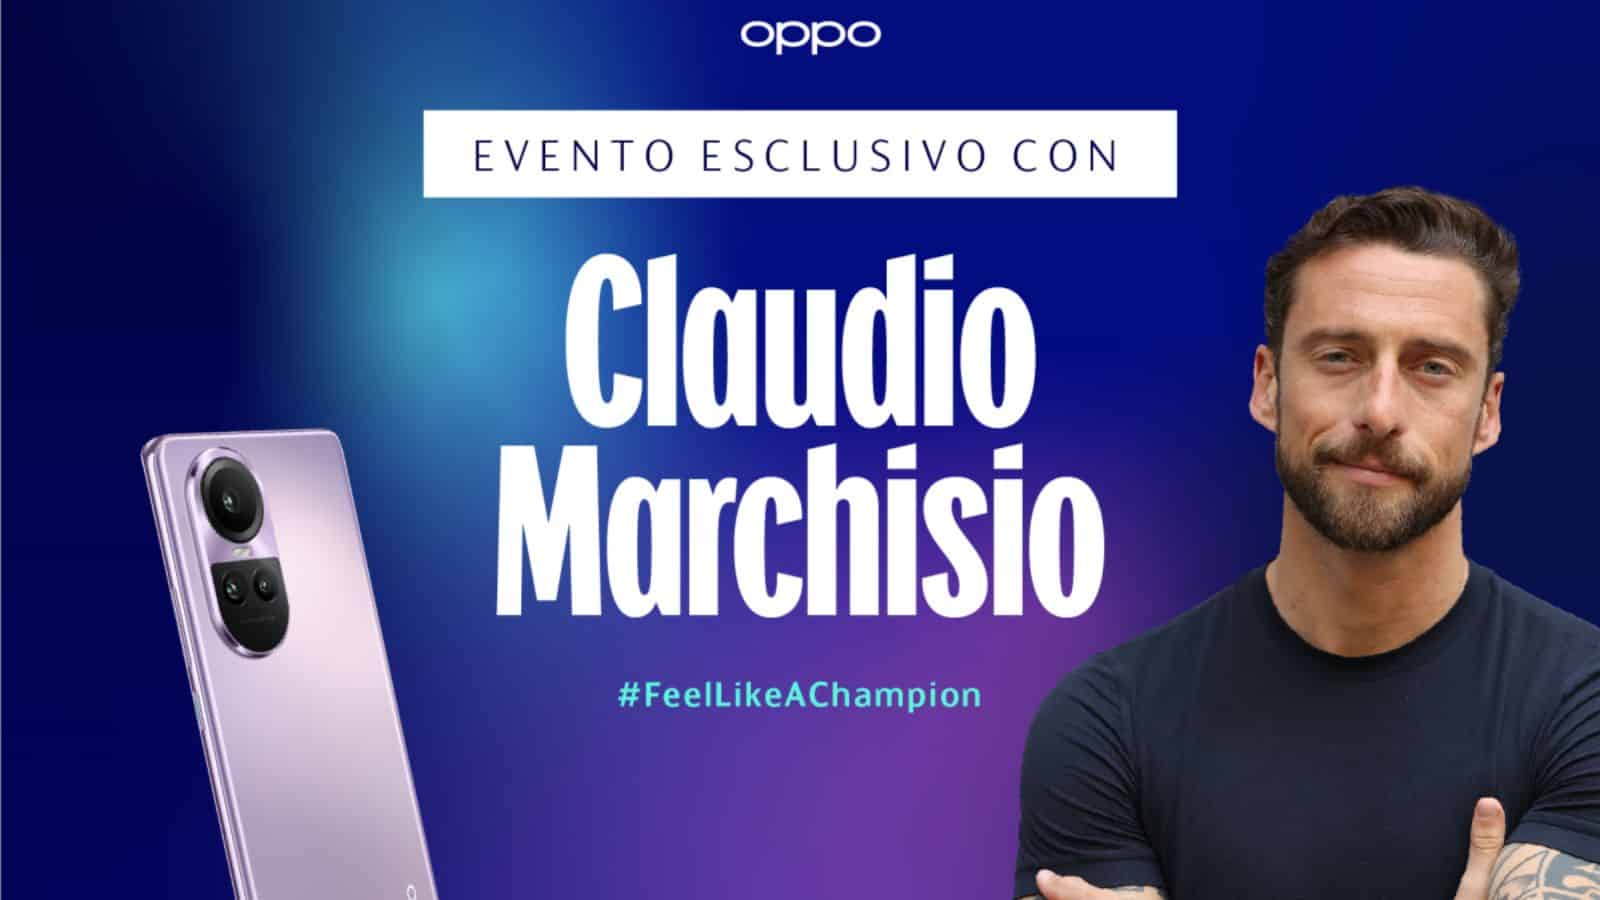 Oppo vi regala la finale di Champions League con Claudio Marchisio 